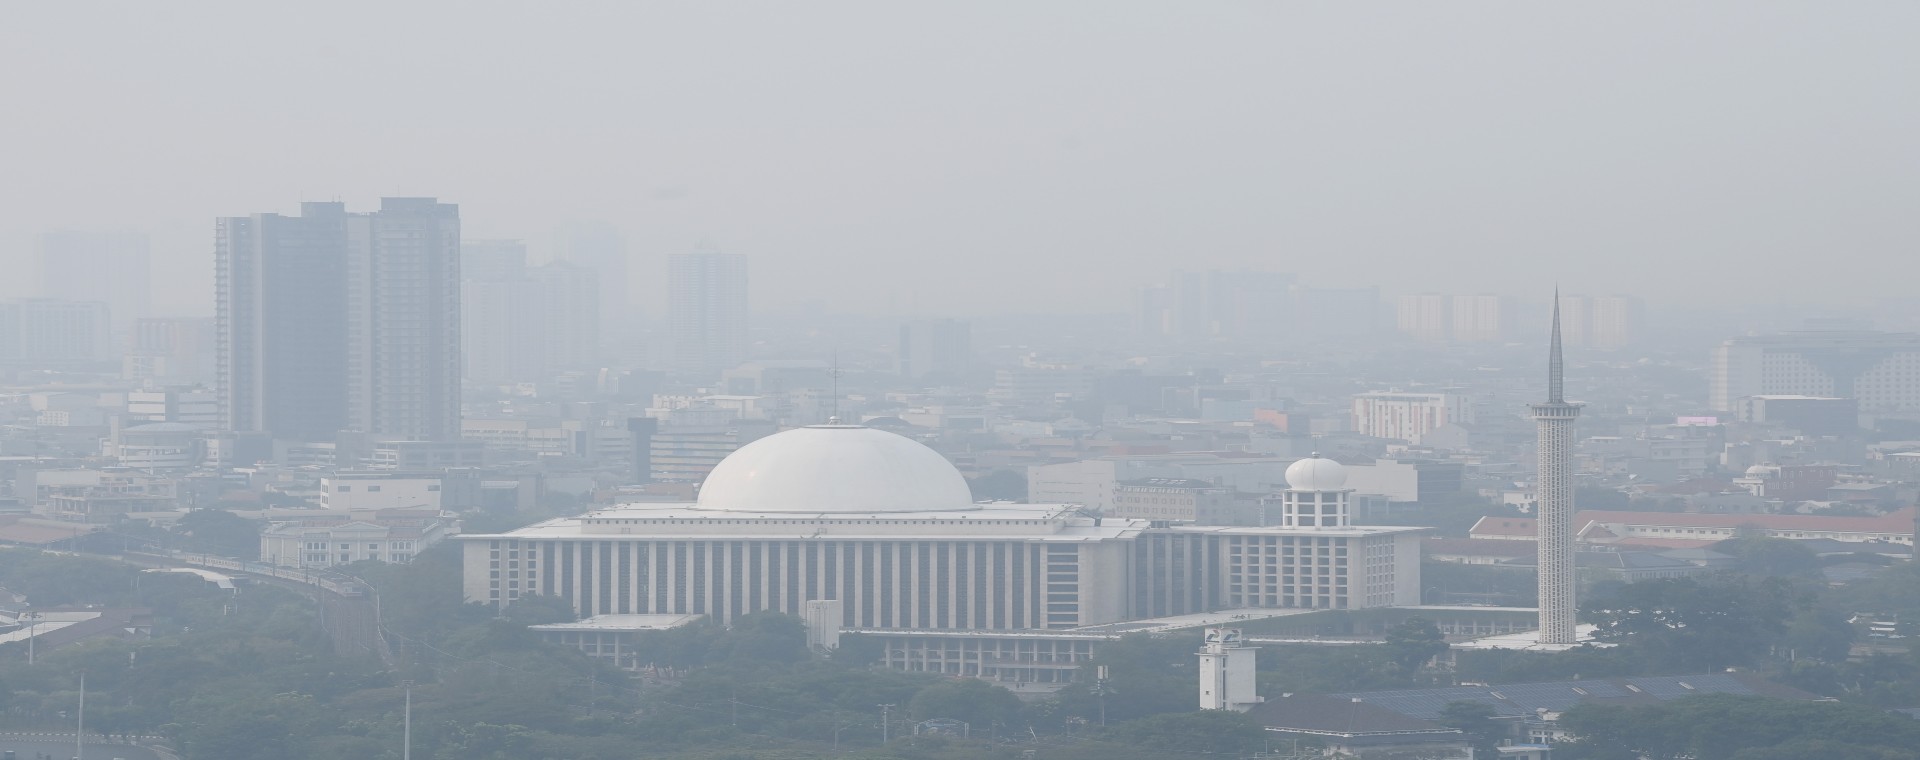  Pj Heru Kritik Pemkot Bodetabek Minim Kontribusi Kurangi Polusi Jakarta